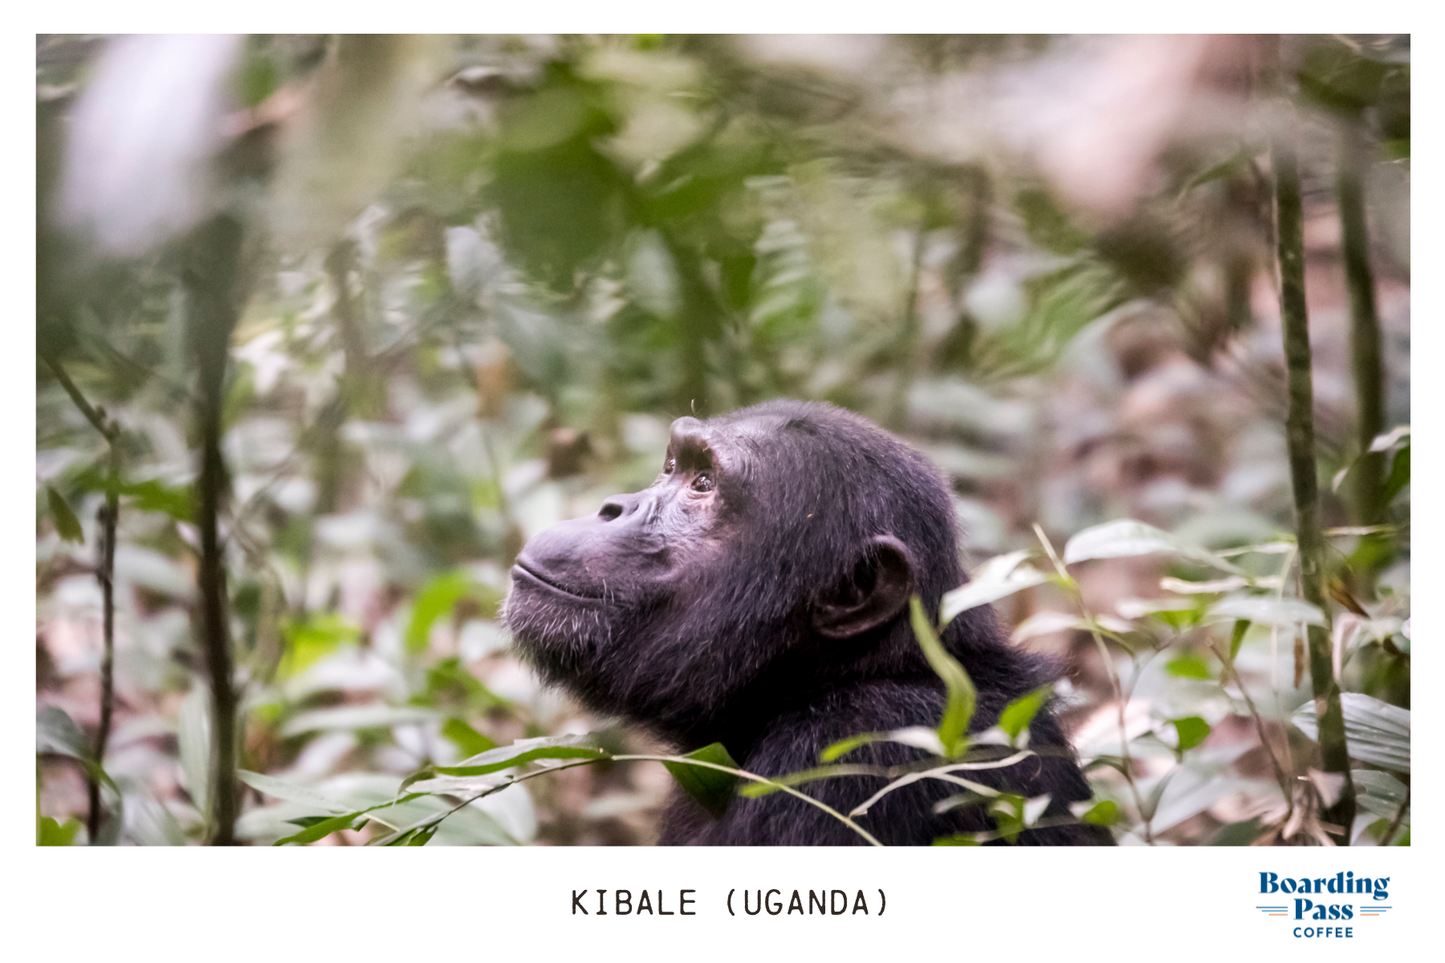 Kibale (Uganda) - Medium-Light roast